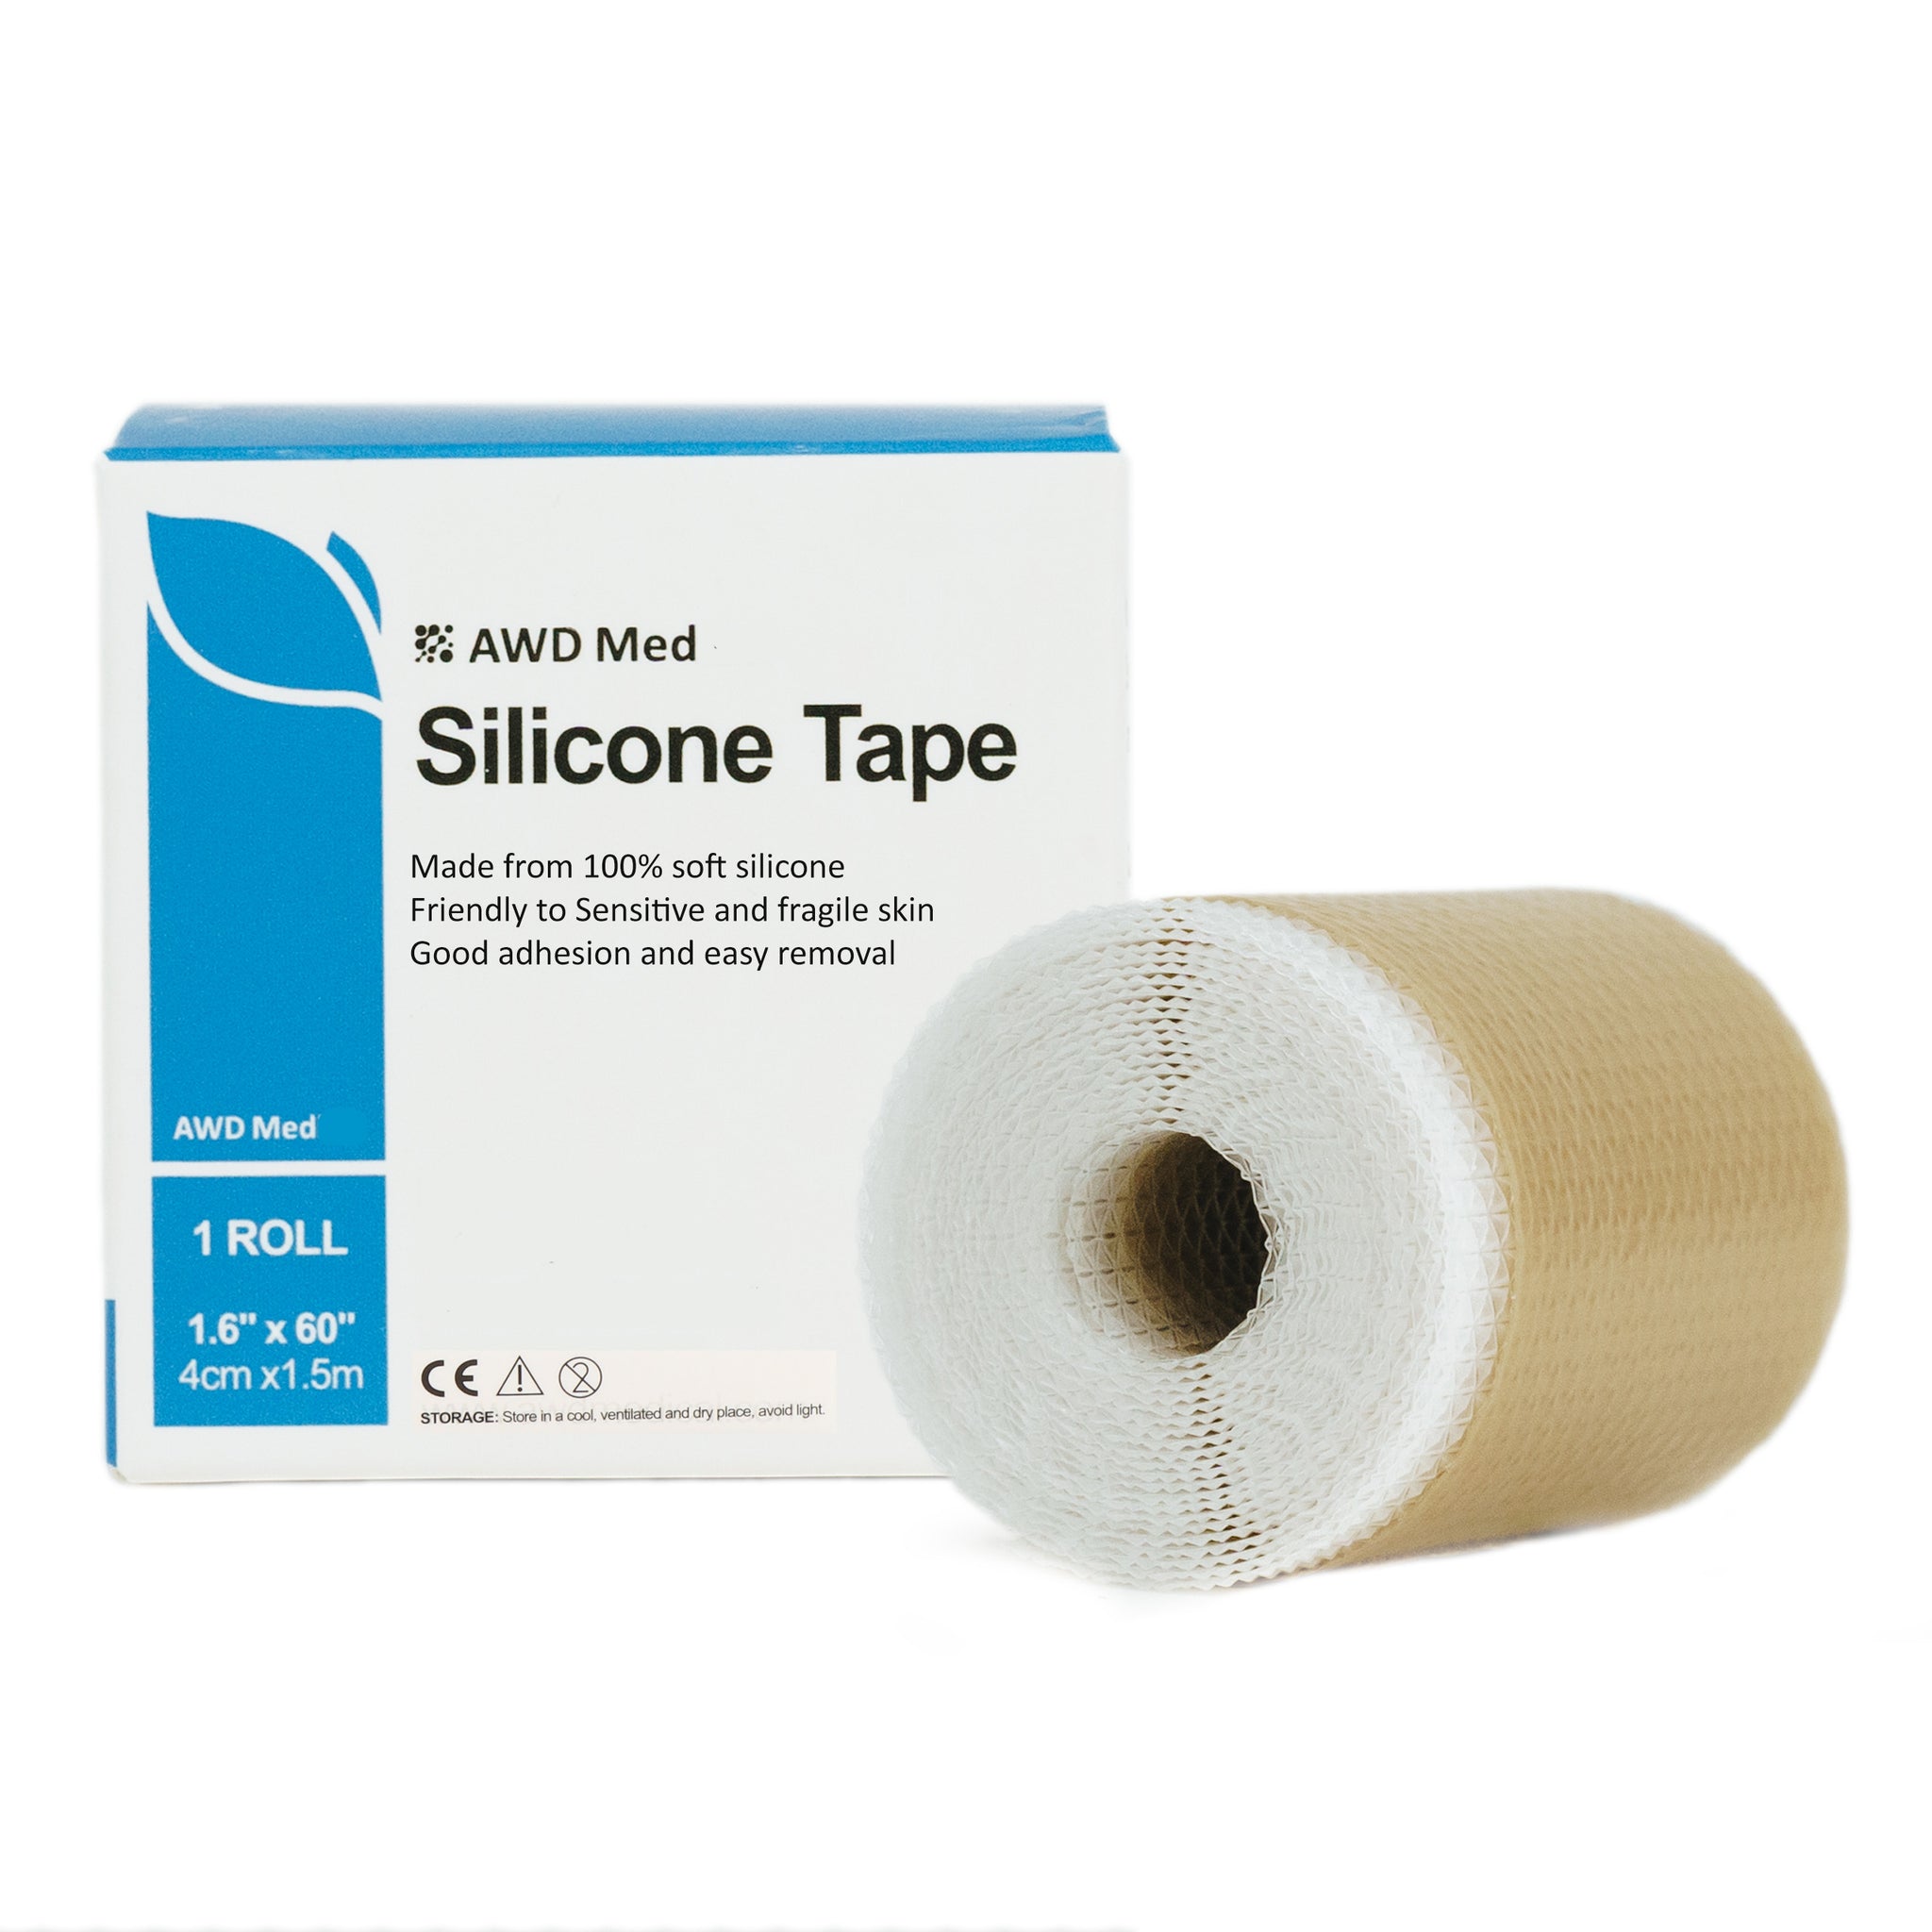 Soft Silicone Tape